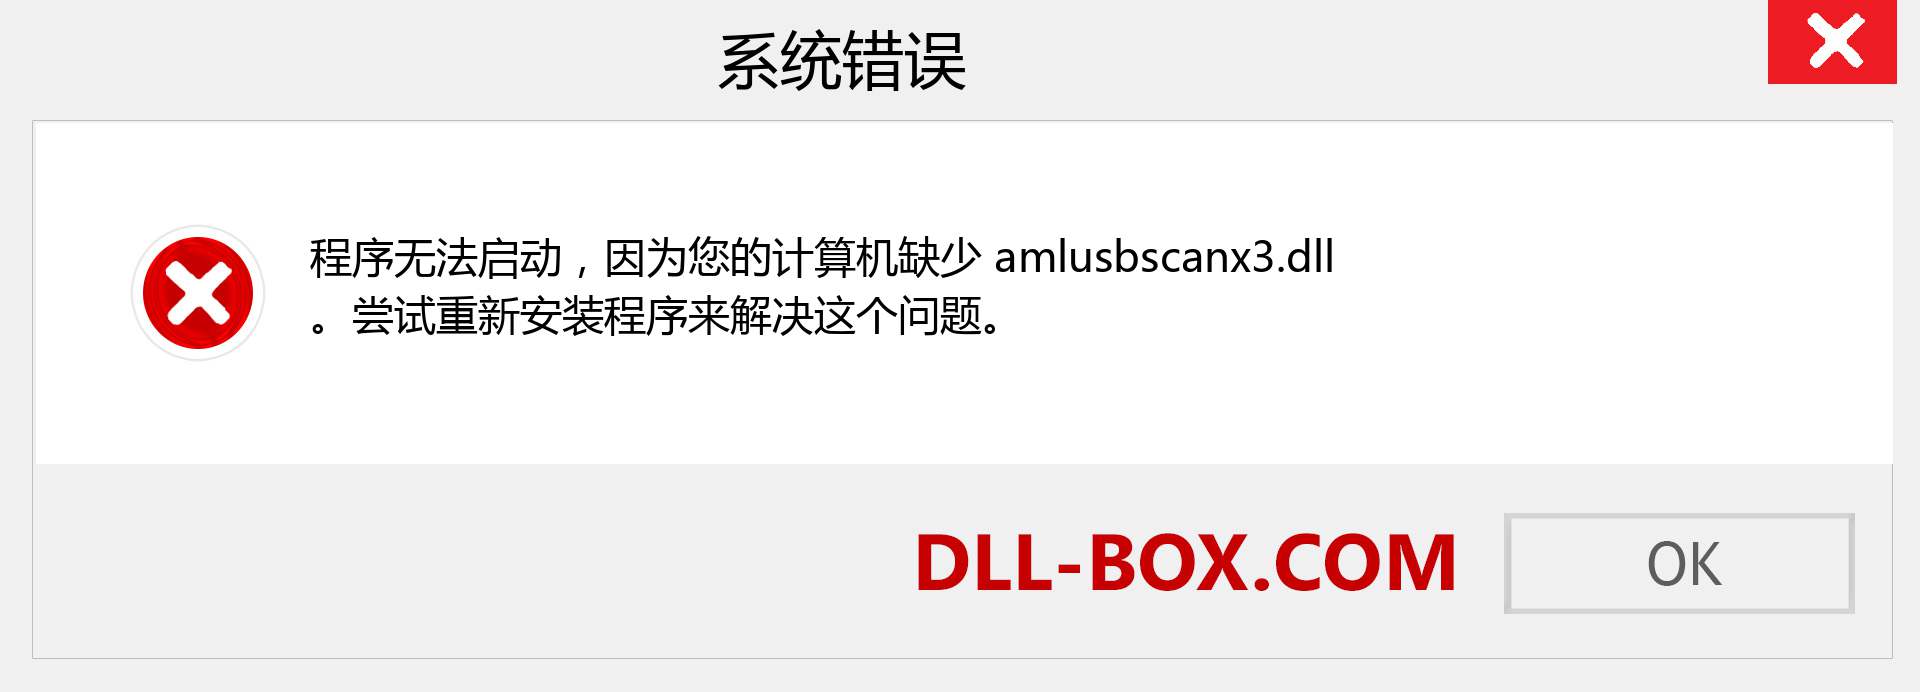 amlusbscanx3.dll 文件丢失？。 适用于 Windows 7、8、10 的下载 - 修复 Windows、照片、图像上的 amlusbscanx3 dll 丢失错误